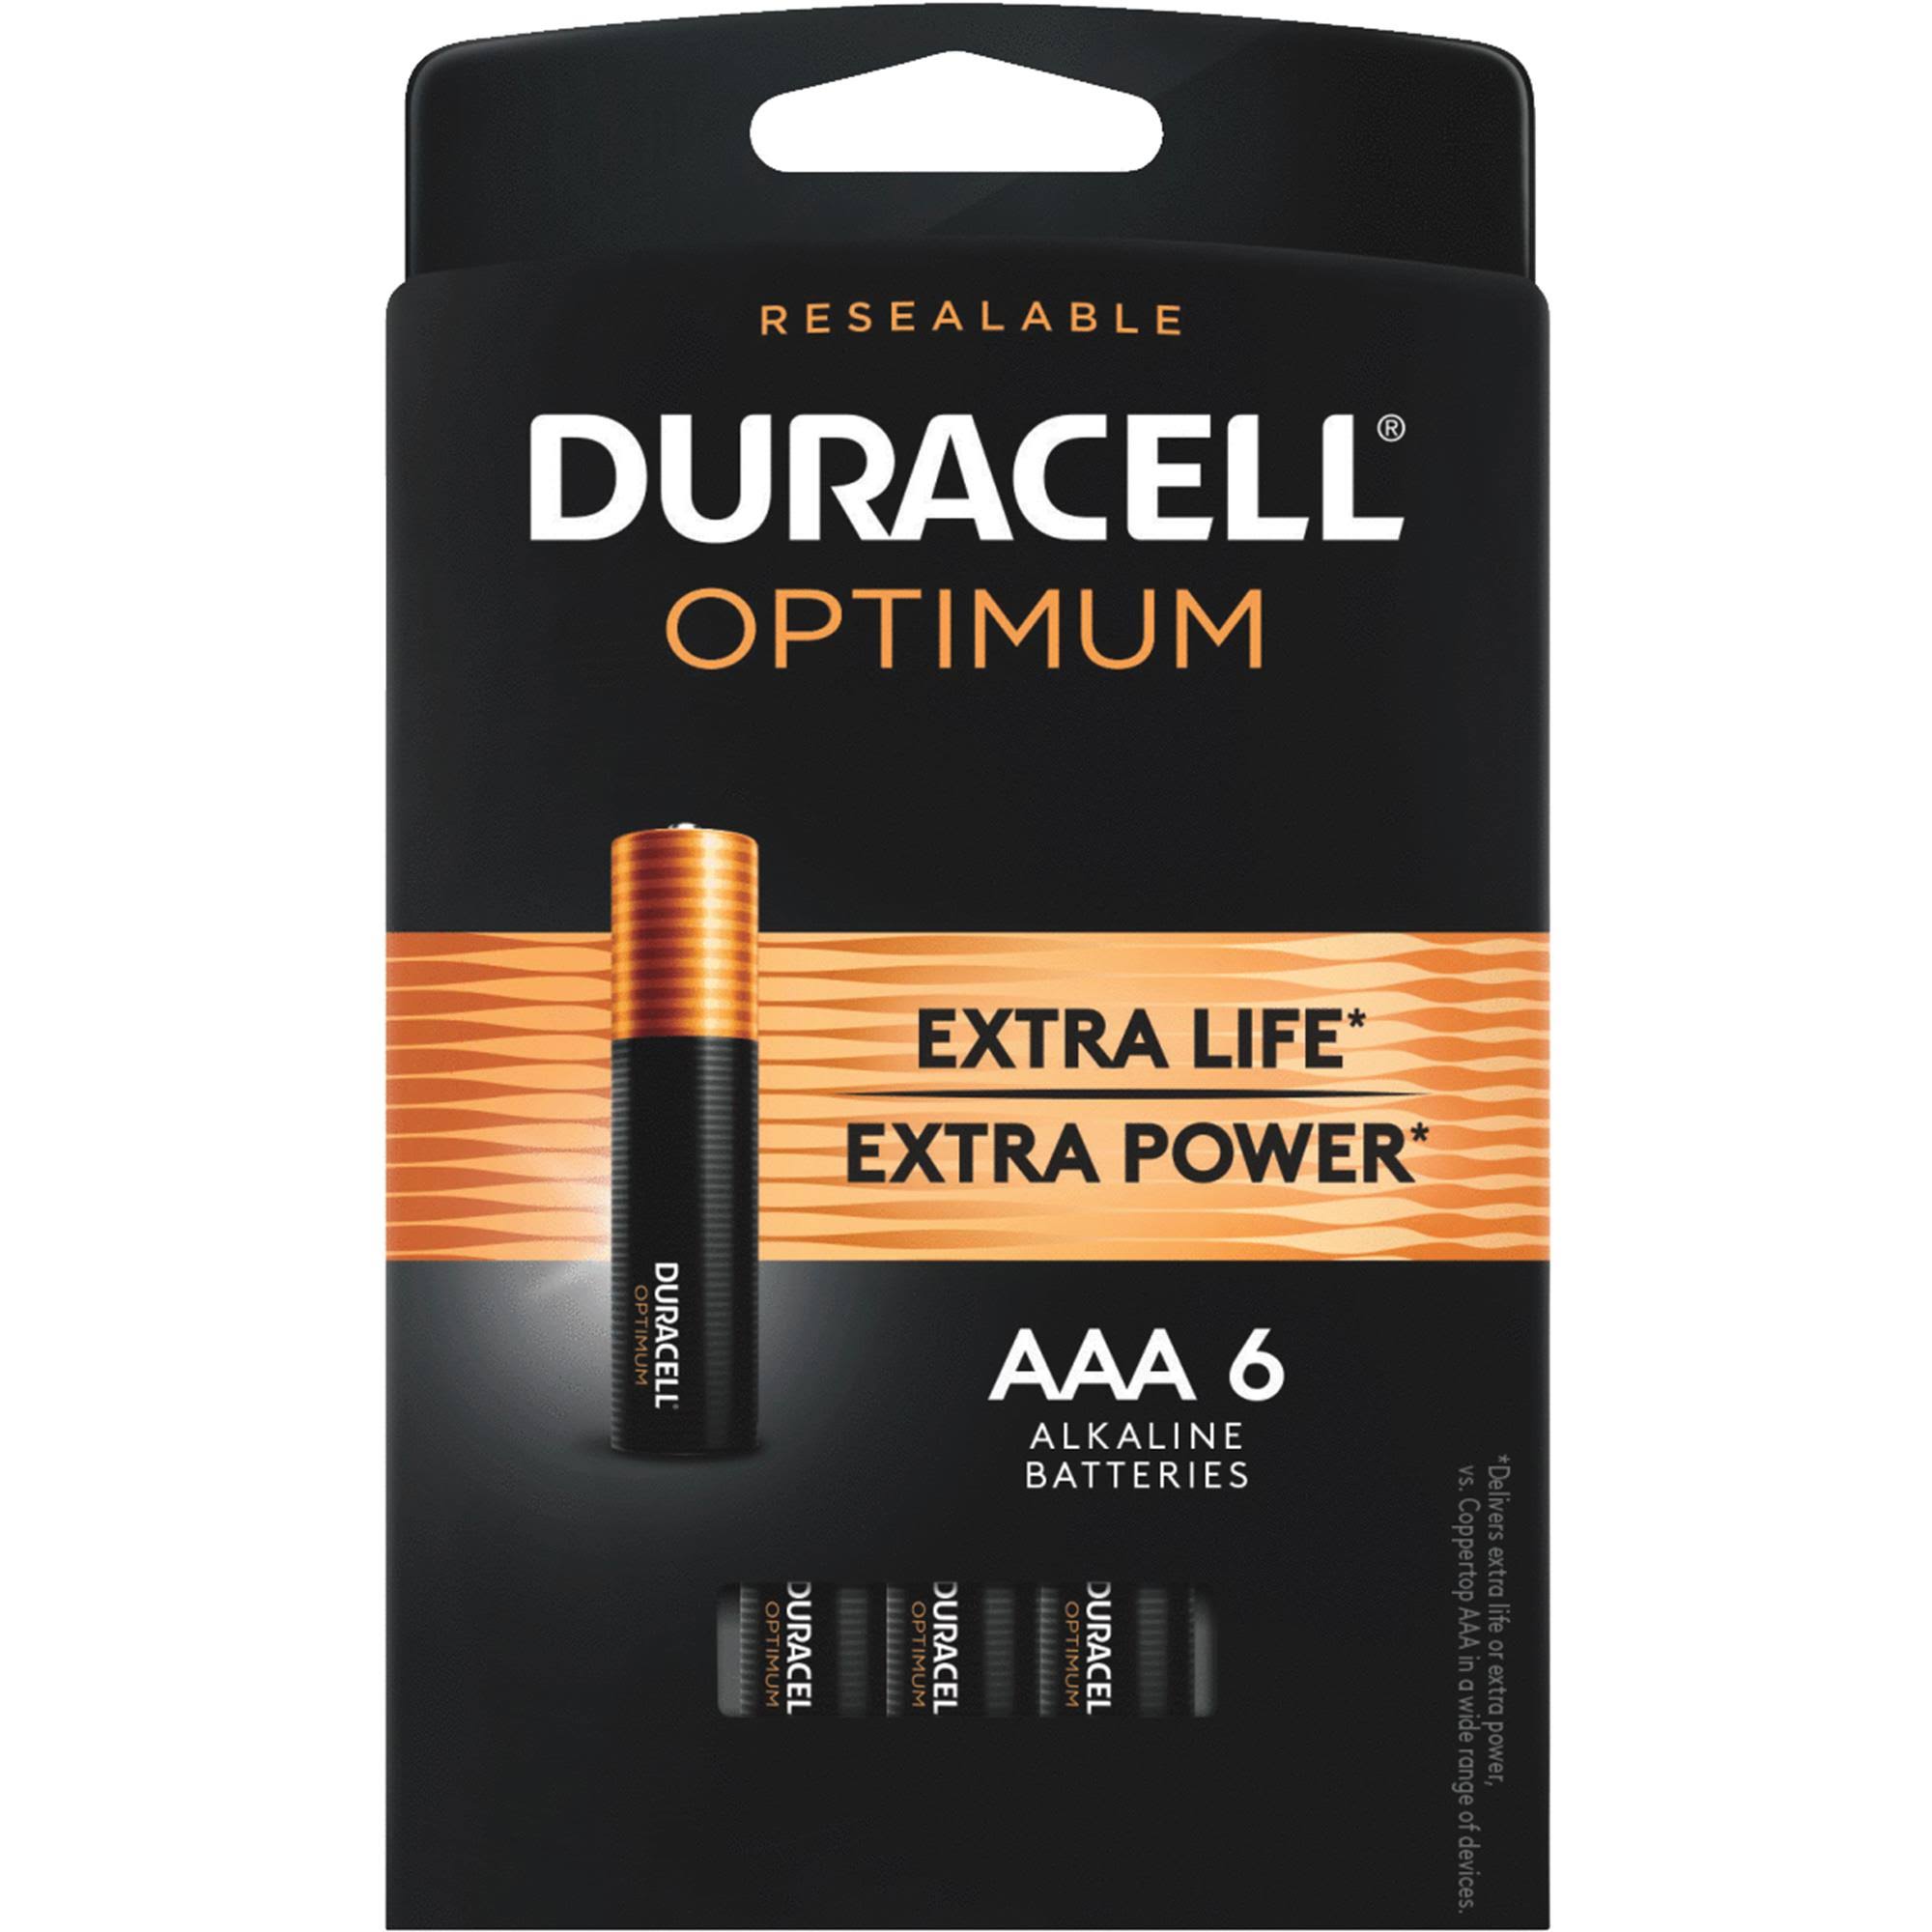 Duracell Optimum AAA Alkaline Battery - 6 pack